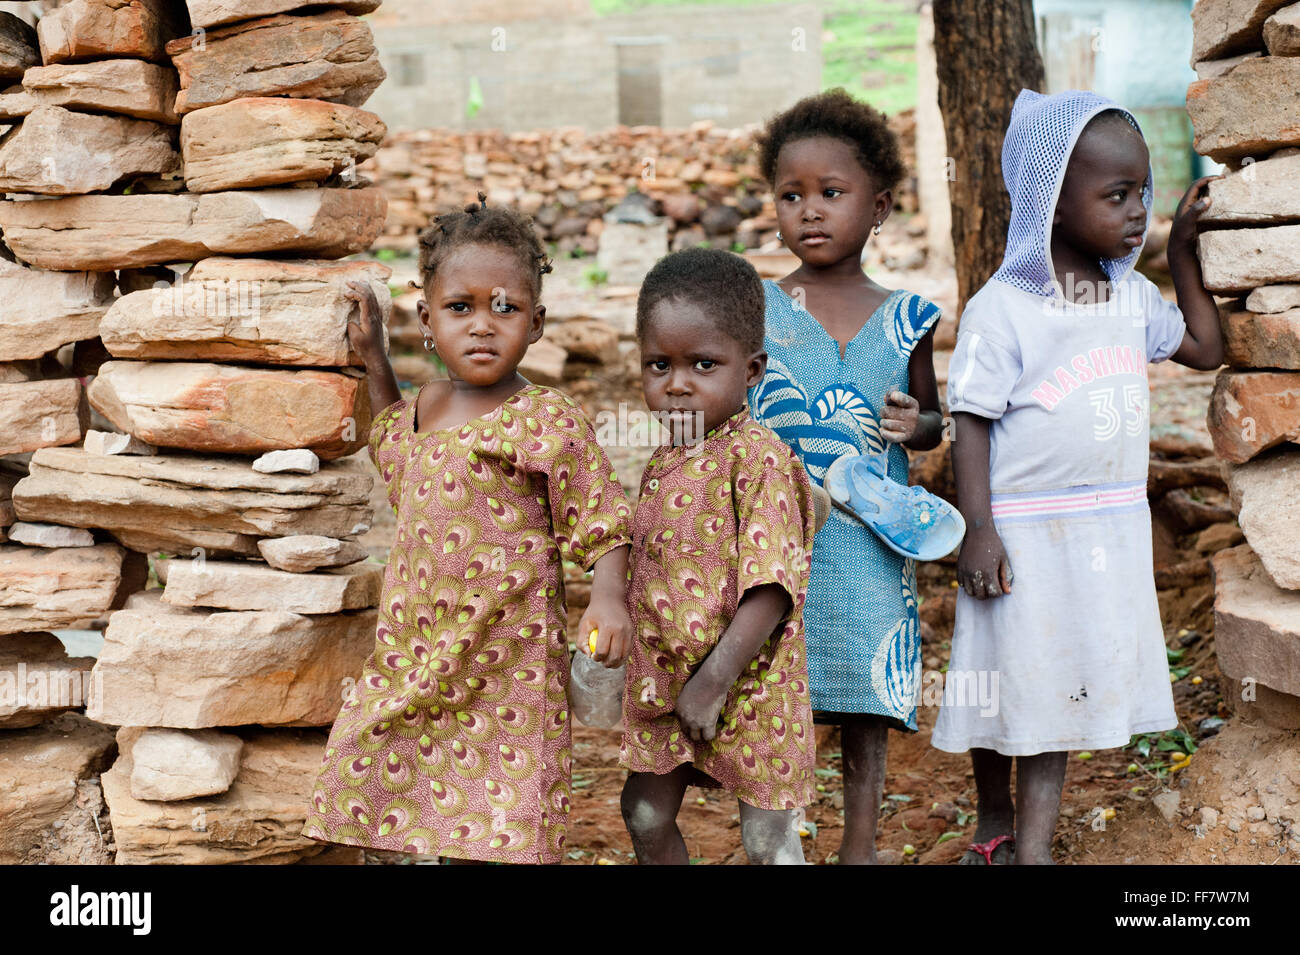 Mali, Afrika - Gruppe von schwarzen Kindern in Afrika Stockfoto